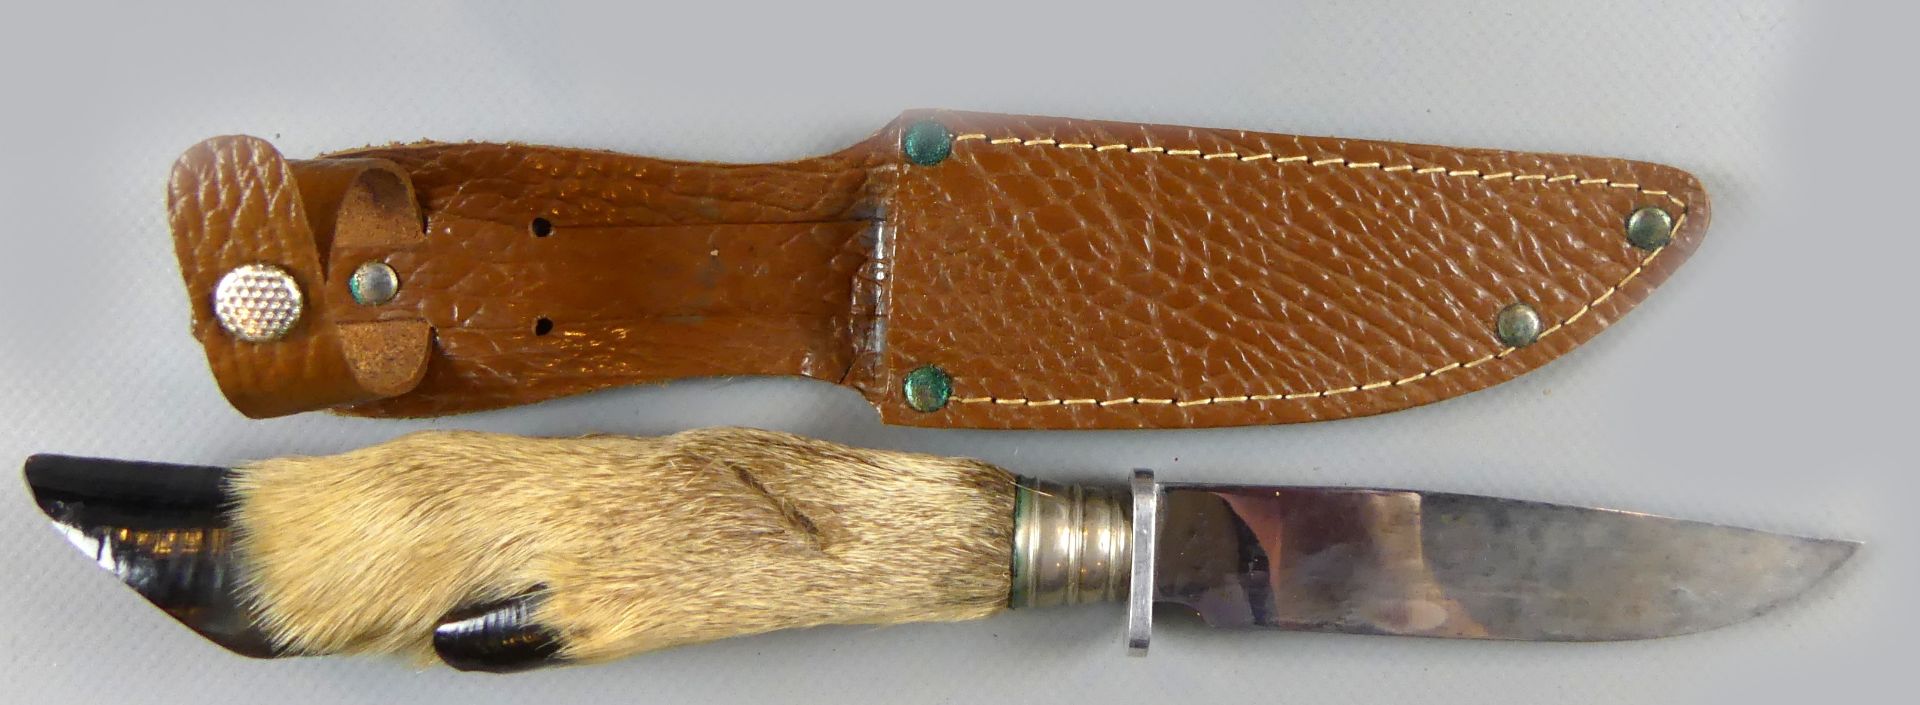 Geweih einer Antilope, Länge ca. 90 cm und ein Jagdmesser - Bild 3 aus 3